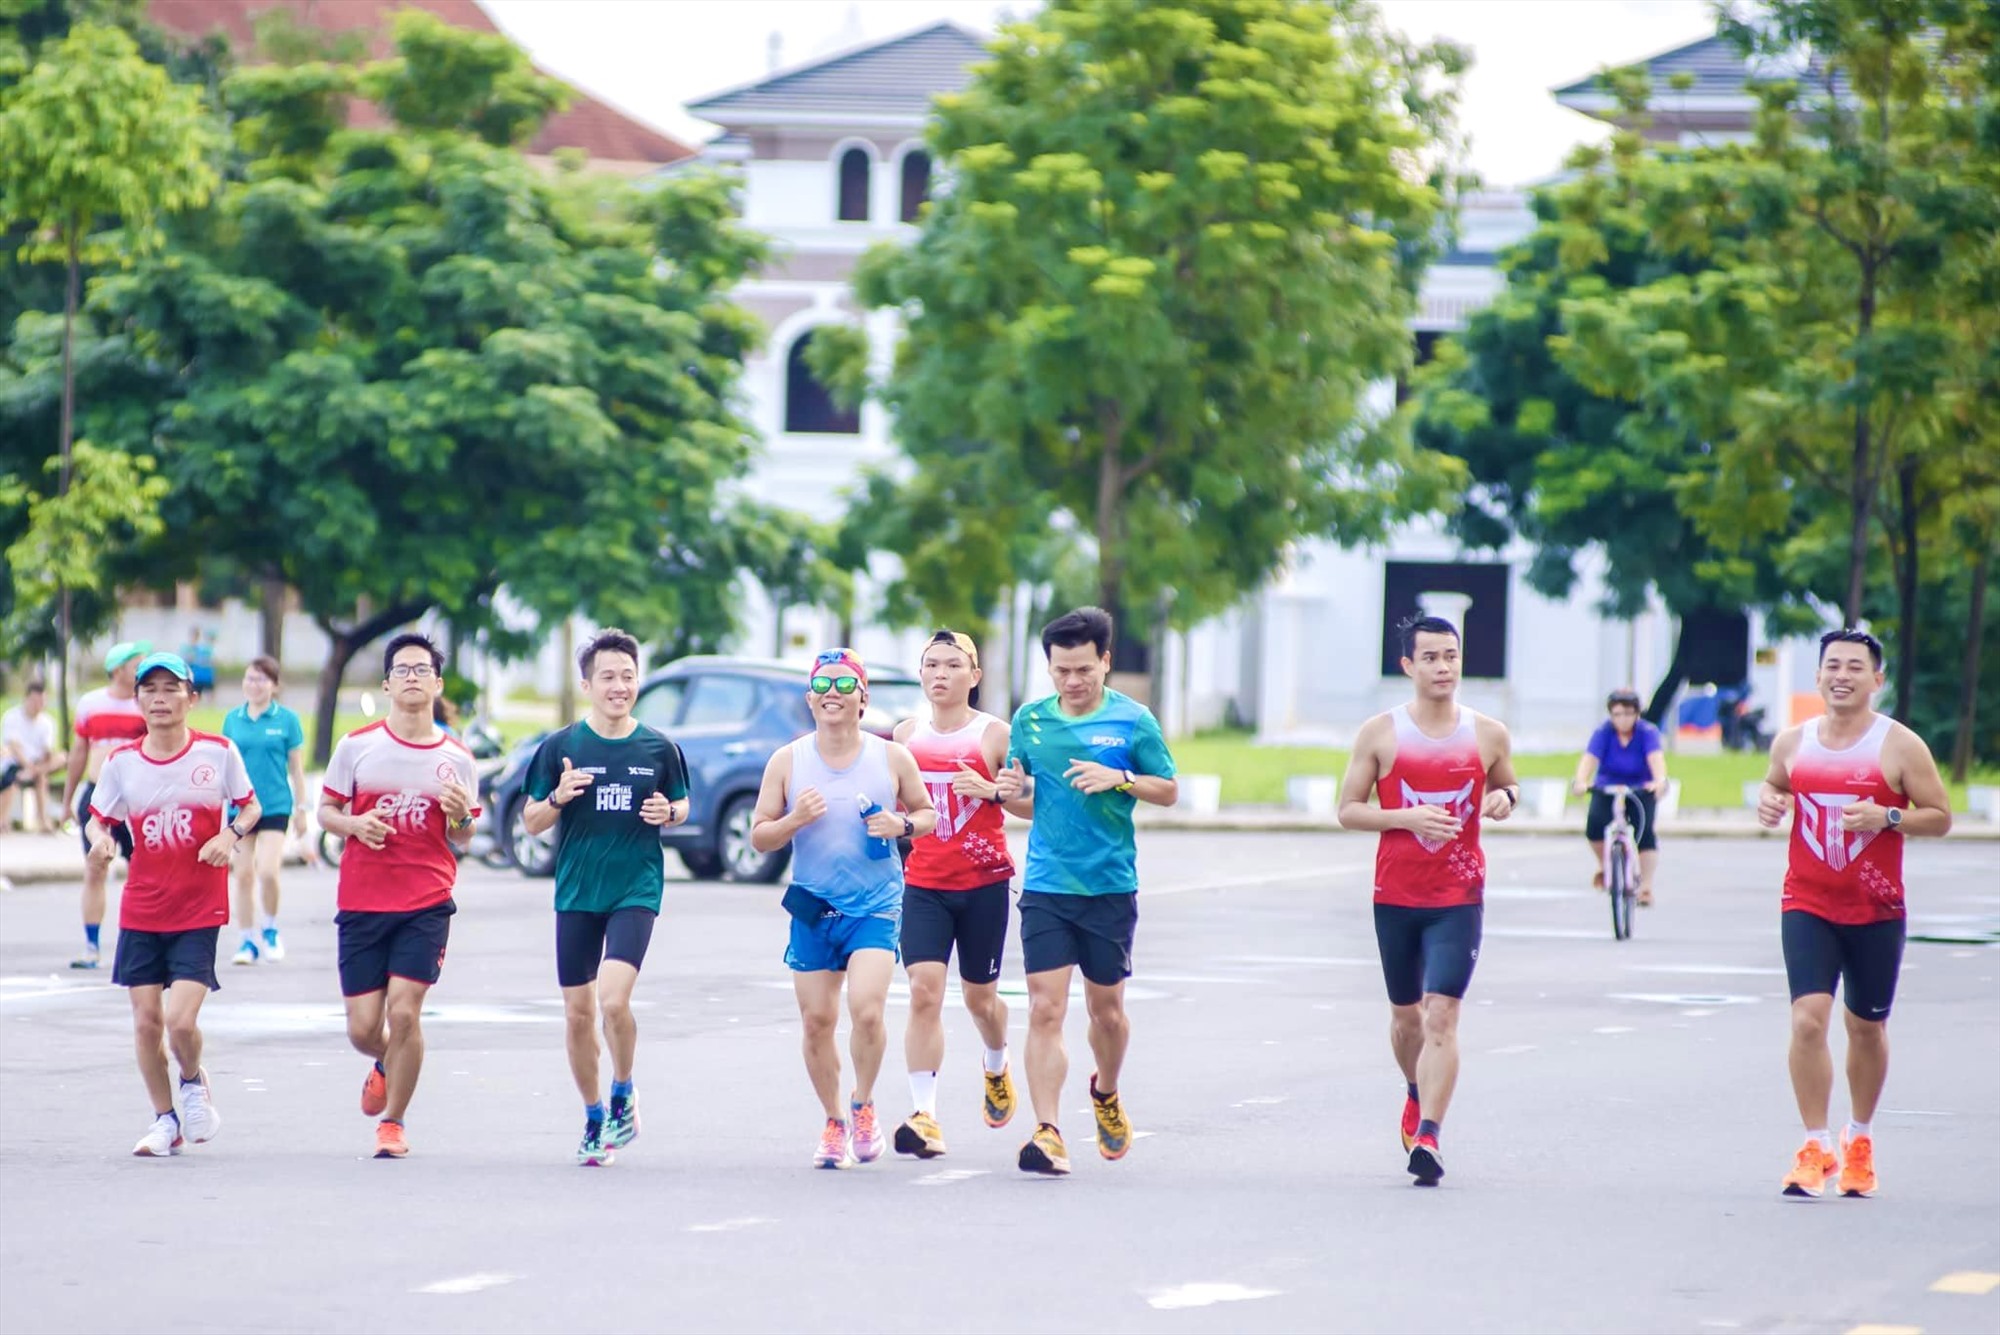 Các runners của tỉnh Quảng Trị hăng say luyện tập cho những giải chạy lớn trong thời gian tới - Ảnh: D.C